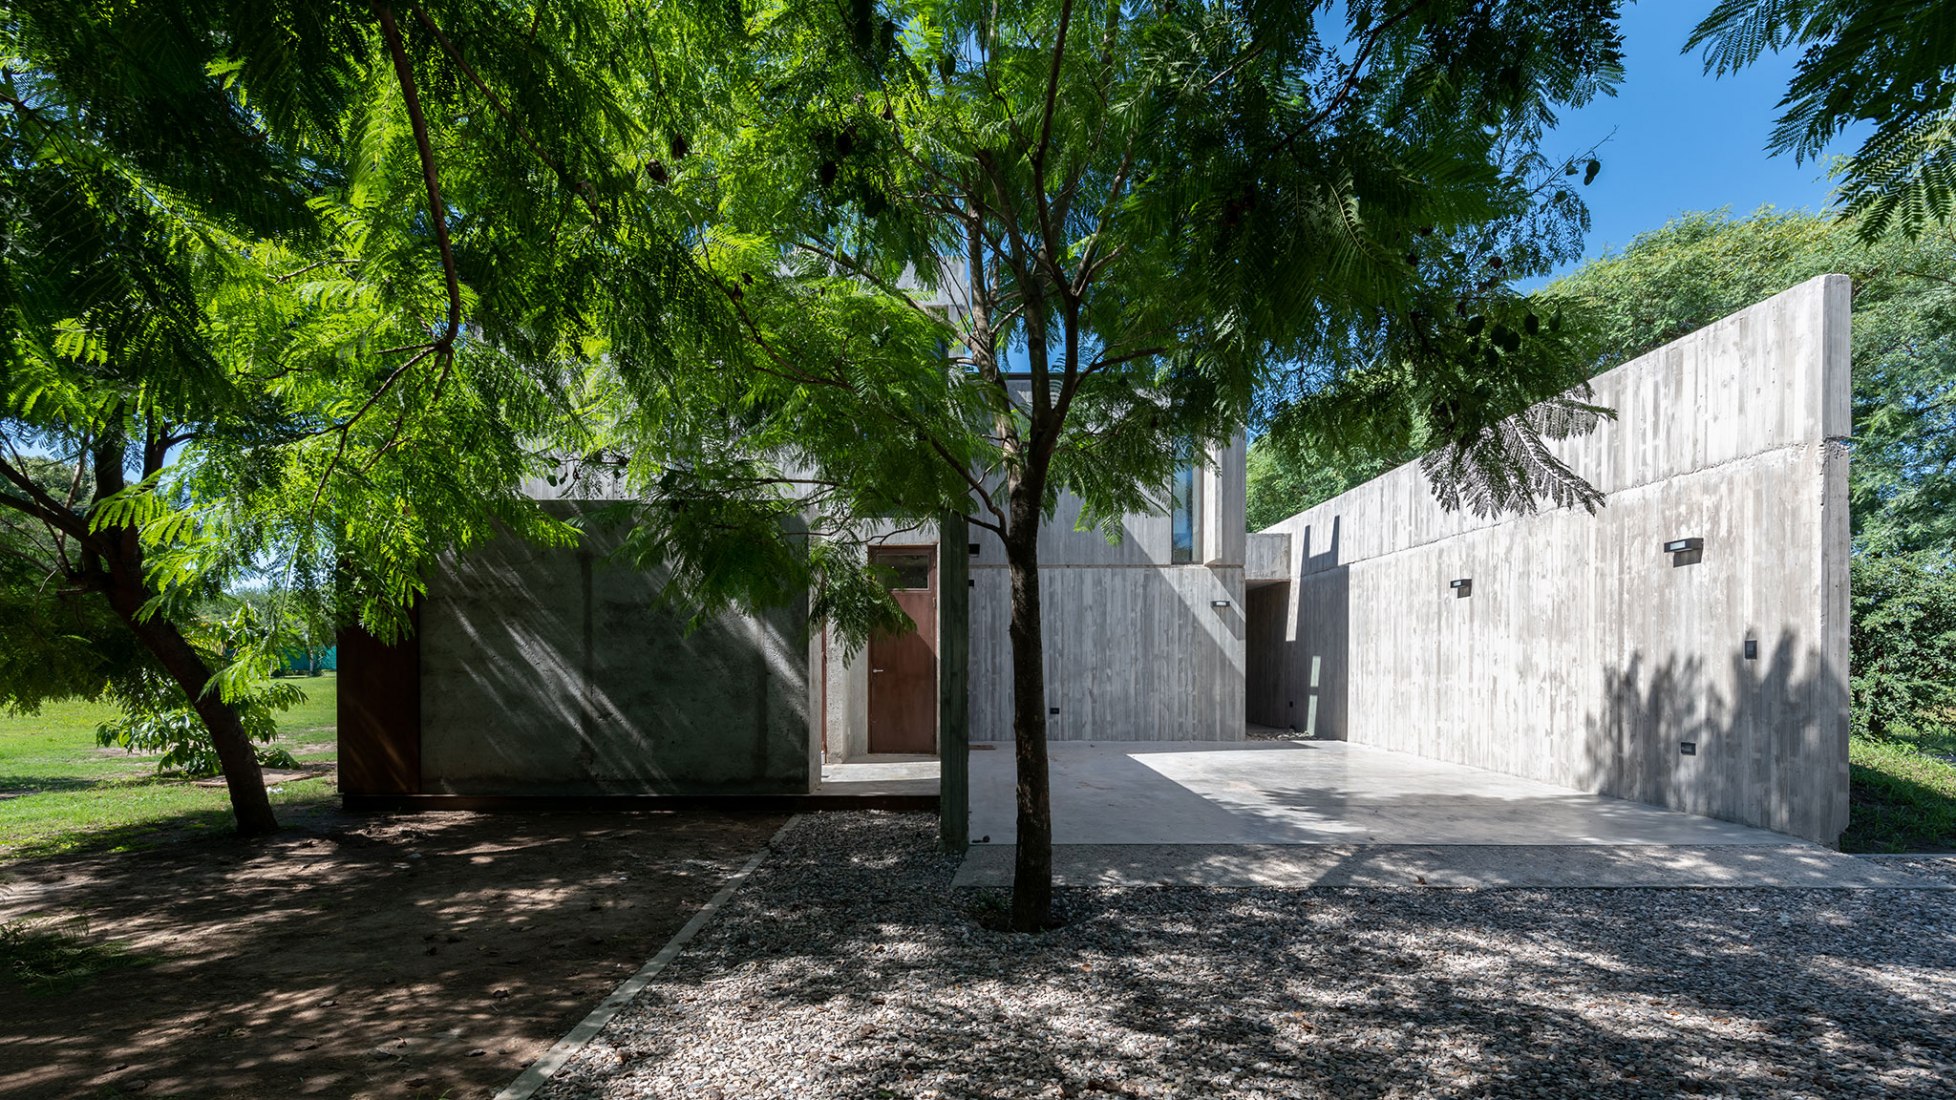 Casa en Villa Allende por Santiago Viale Arquitecto. Fotografía por Gonzalo Viramonte